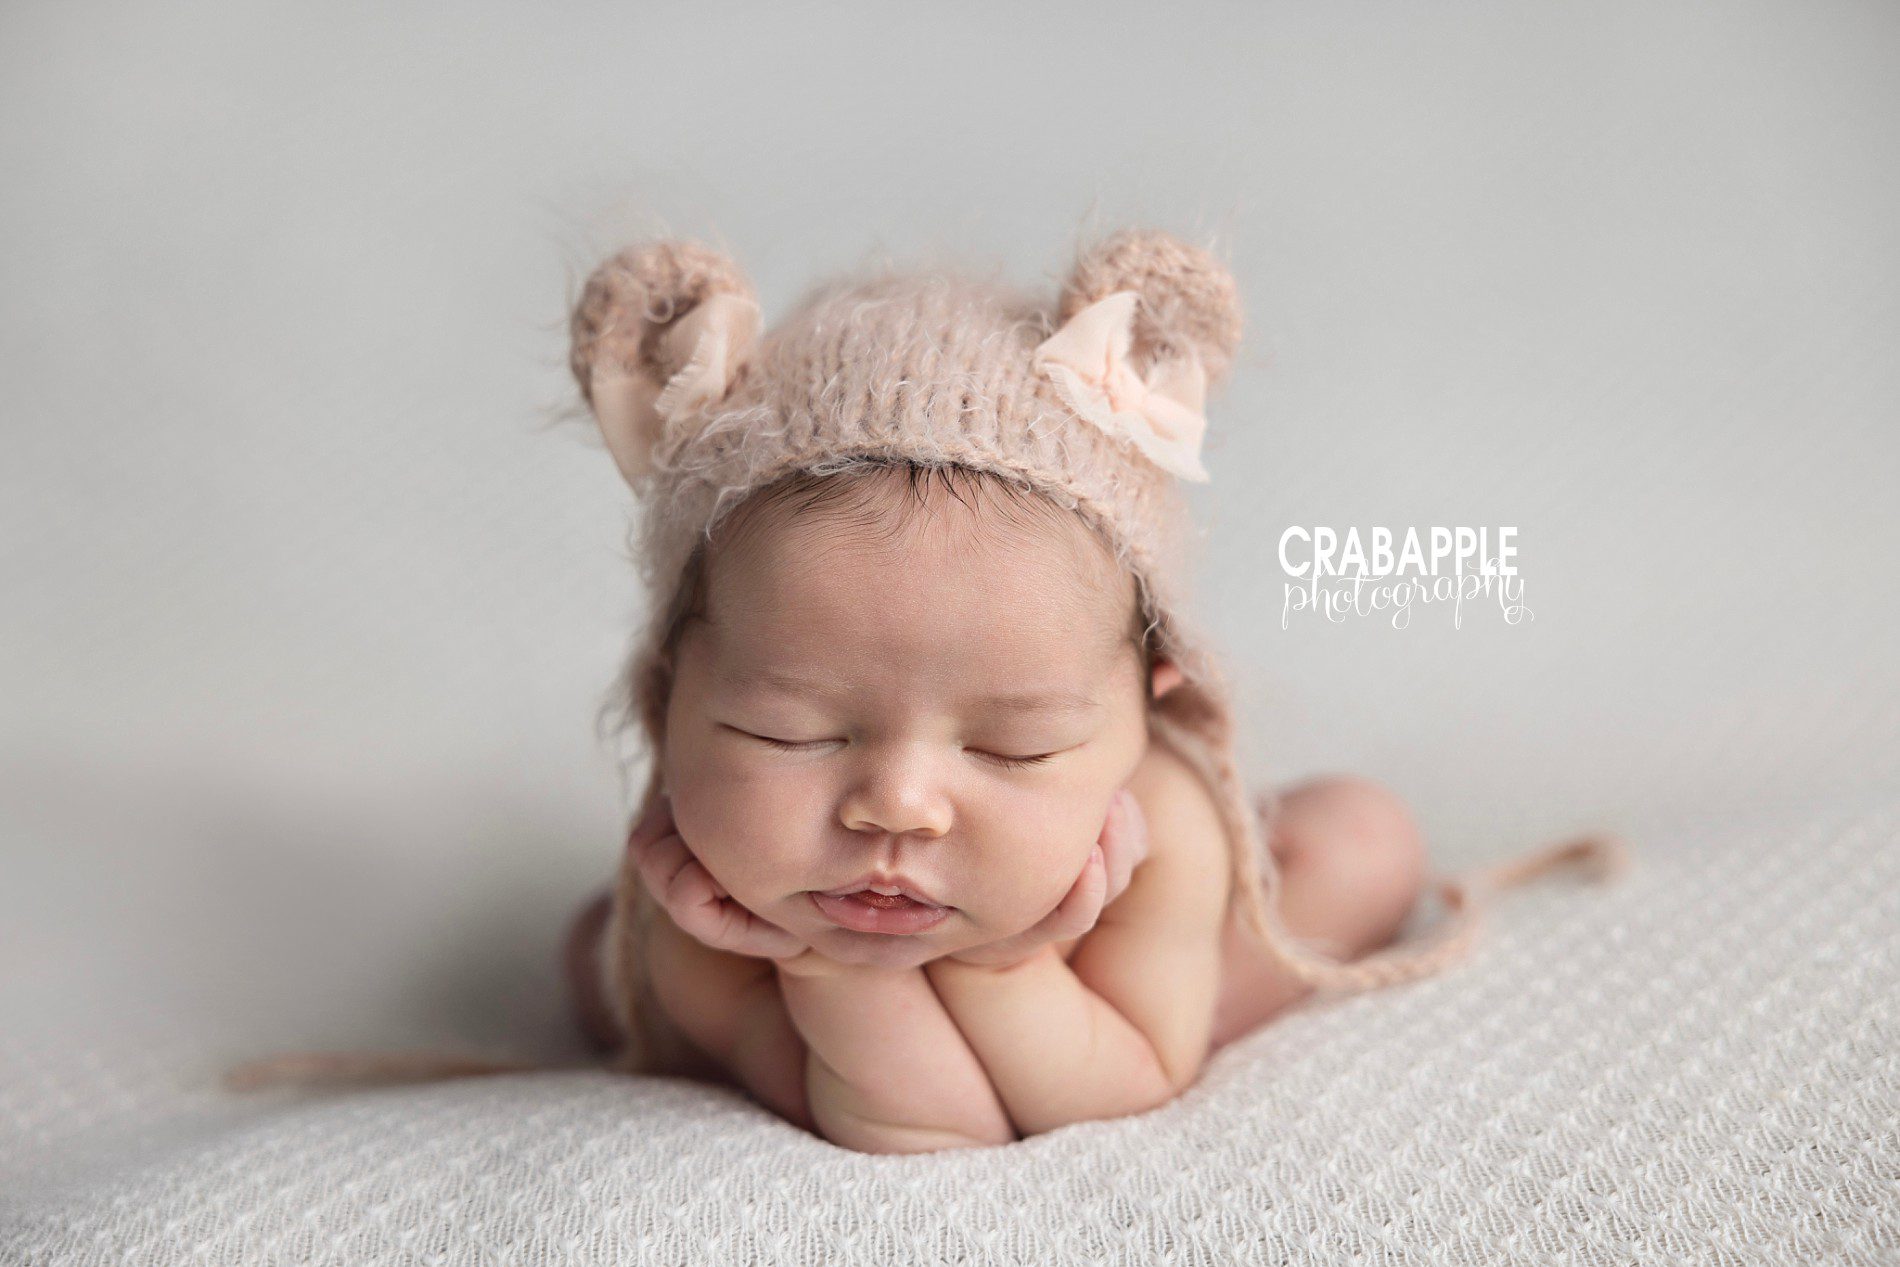 pose ideas for newborn photos 